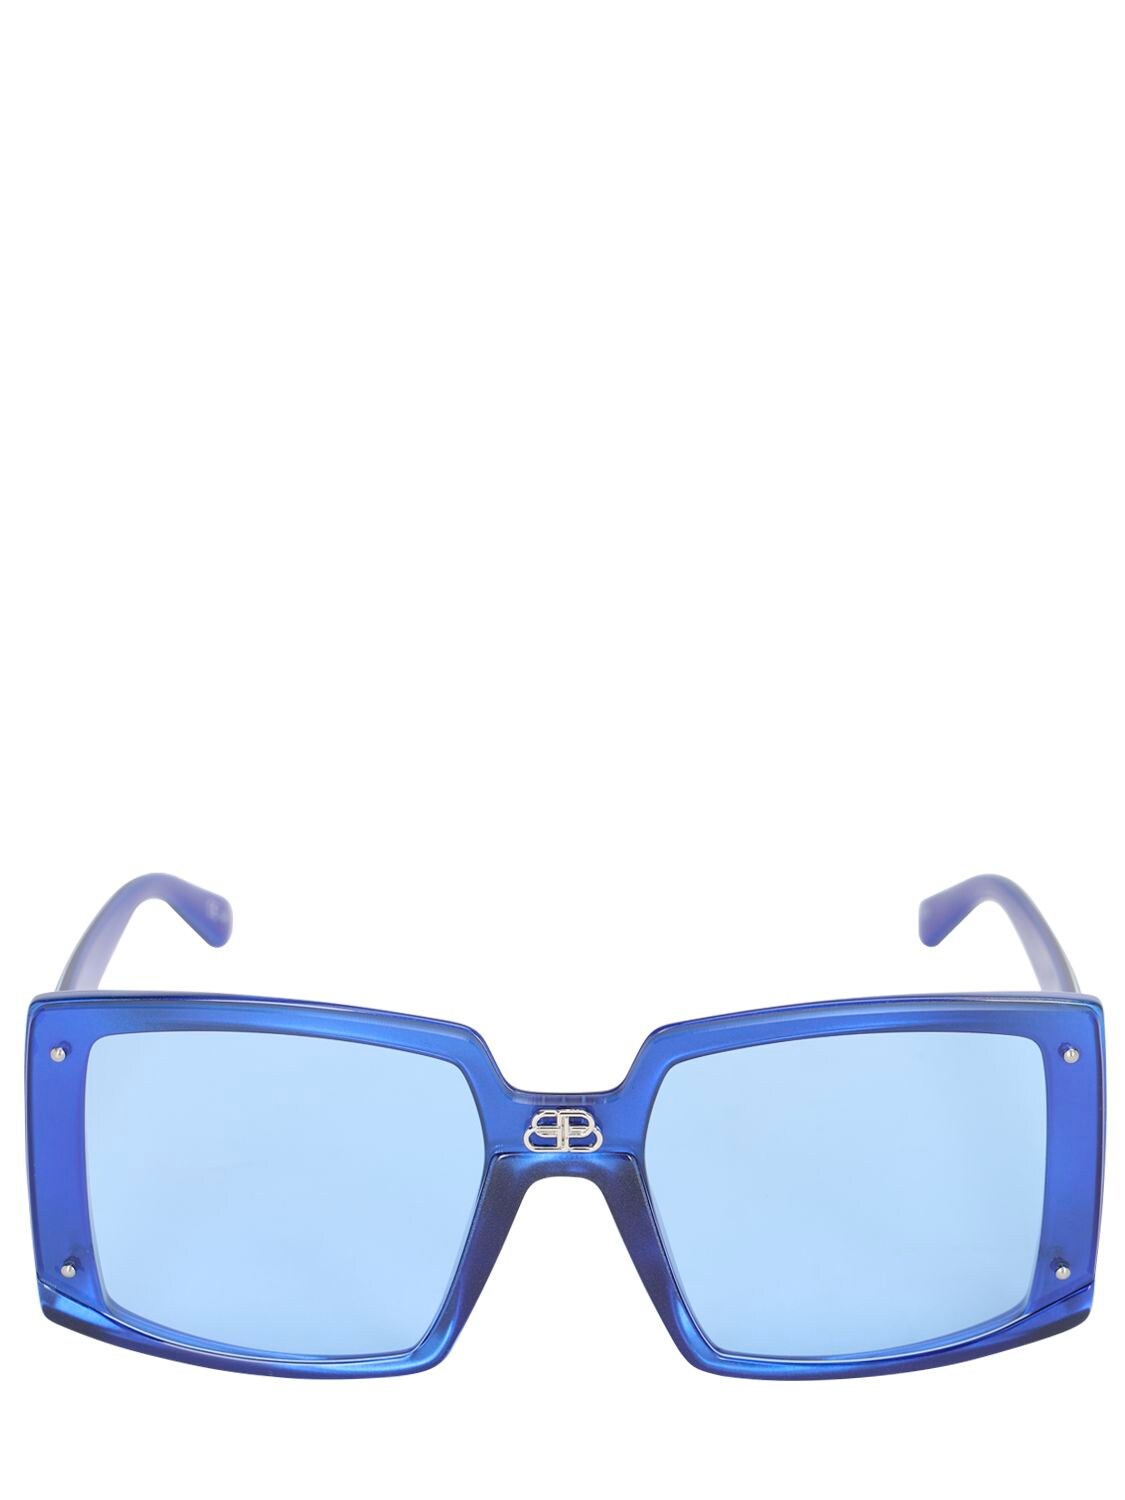 Balenciaga 0081s Shield Square Sunglasses In Blue Pearl